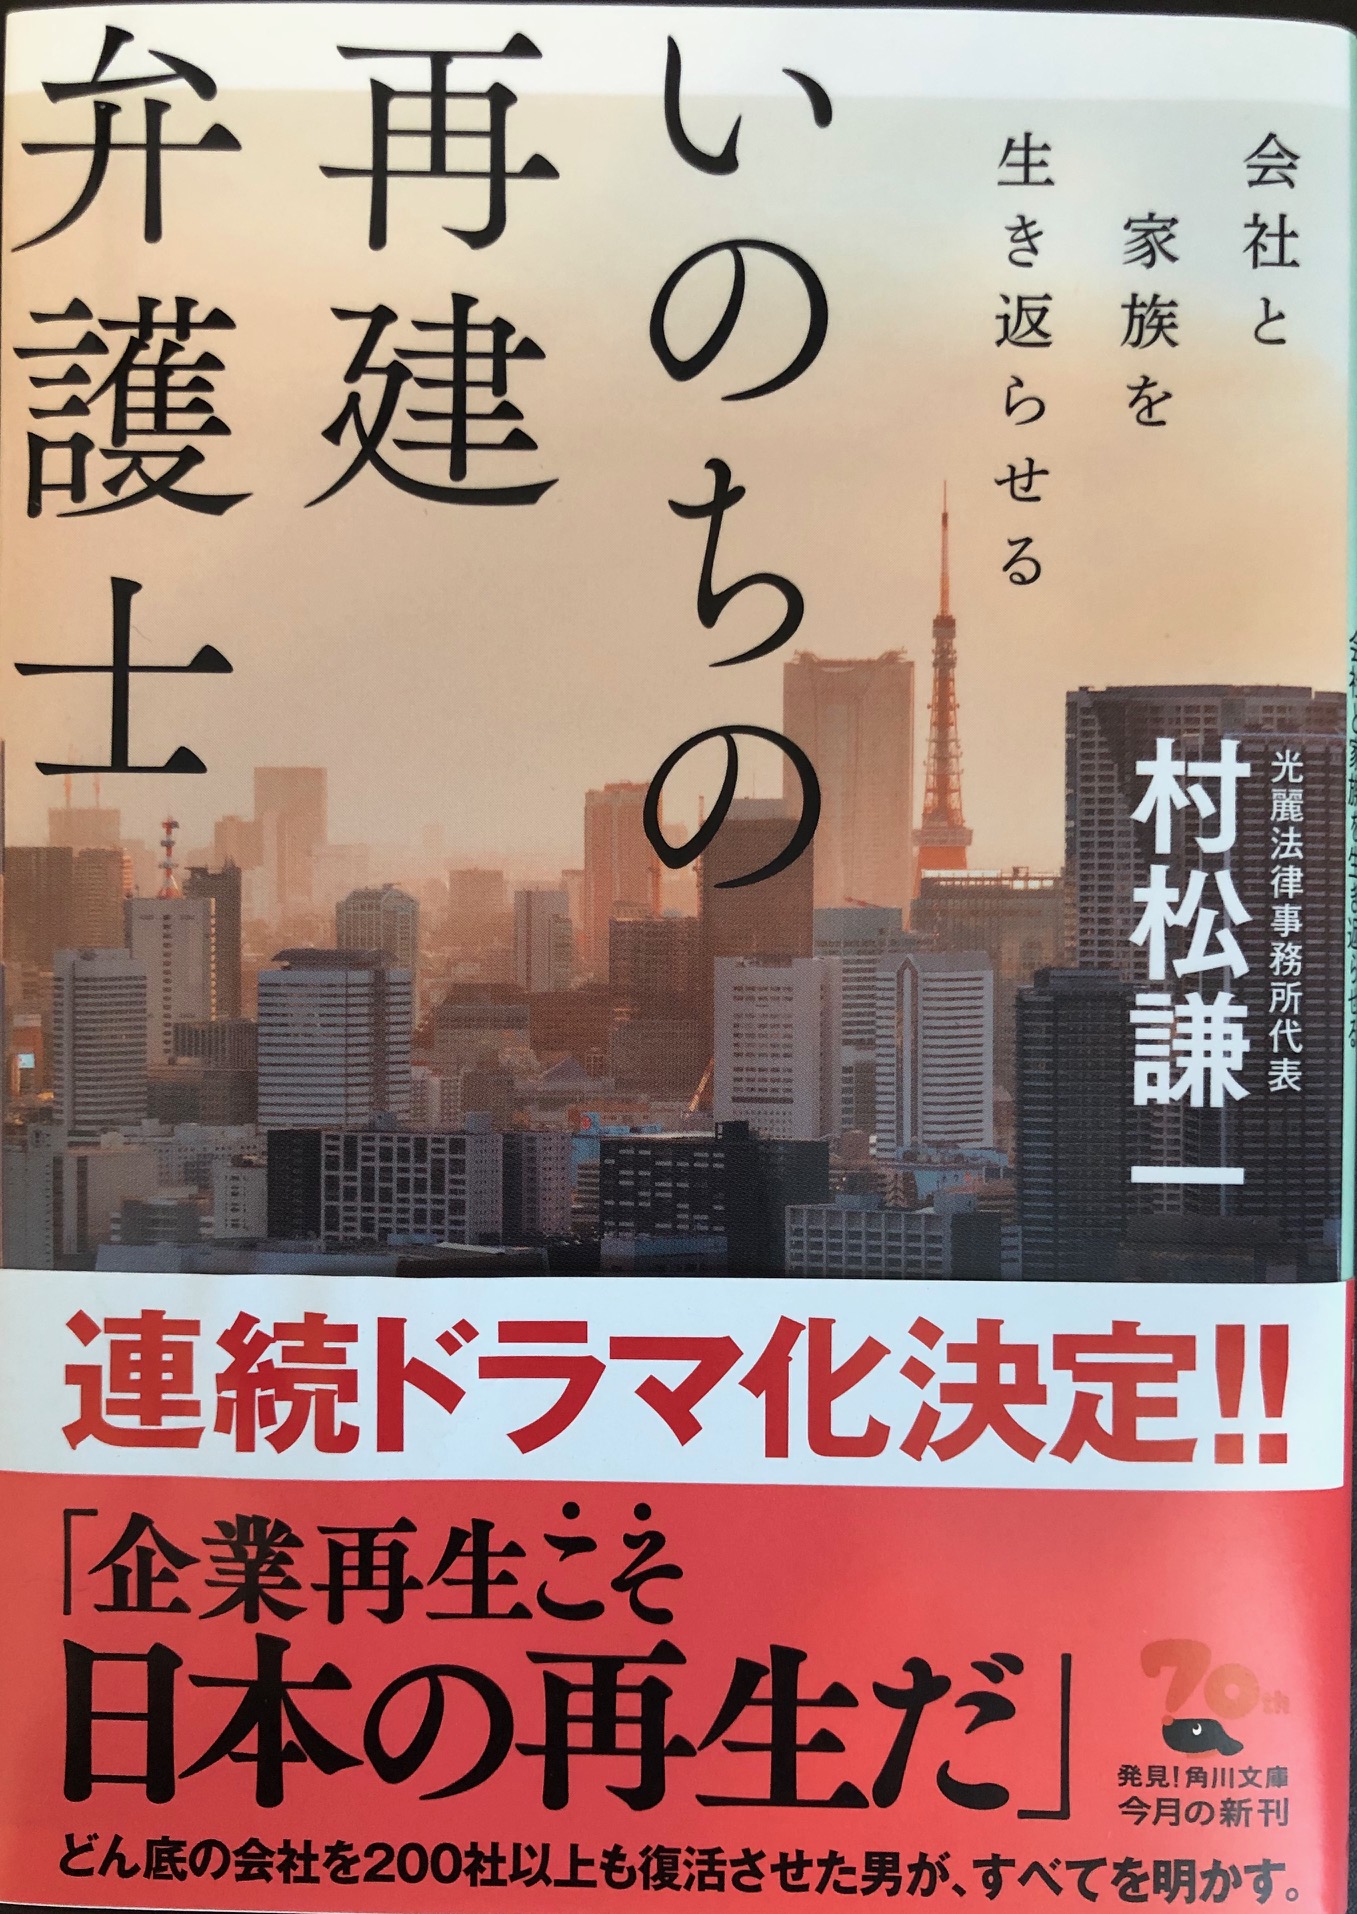 村松謙一著作「いのちの再建弁護士」を読んで～いのちの再建と会社の再建～